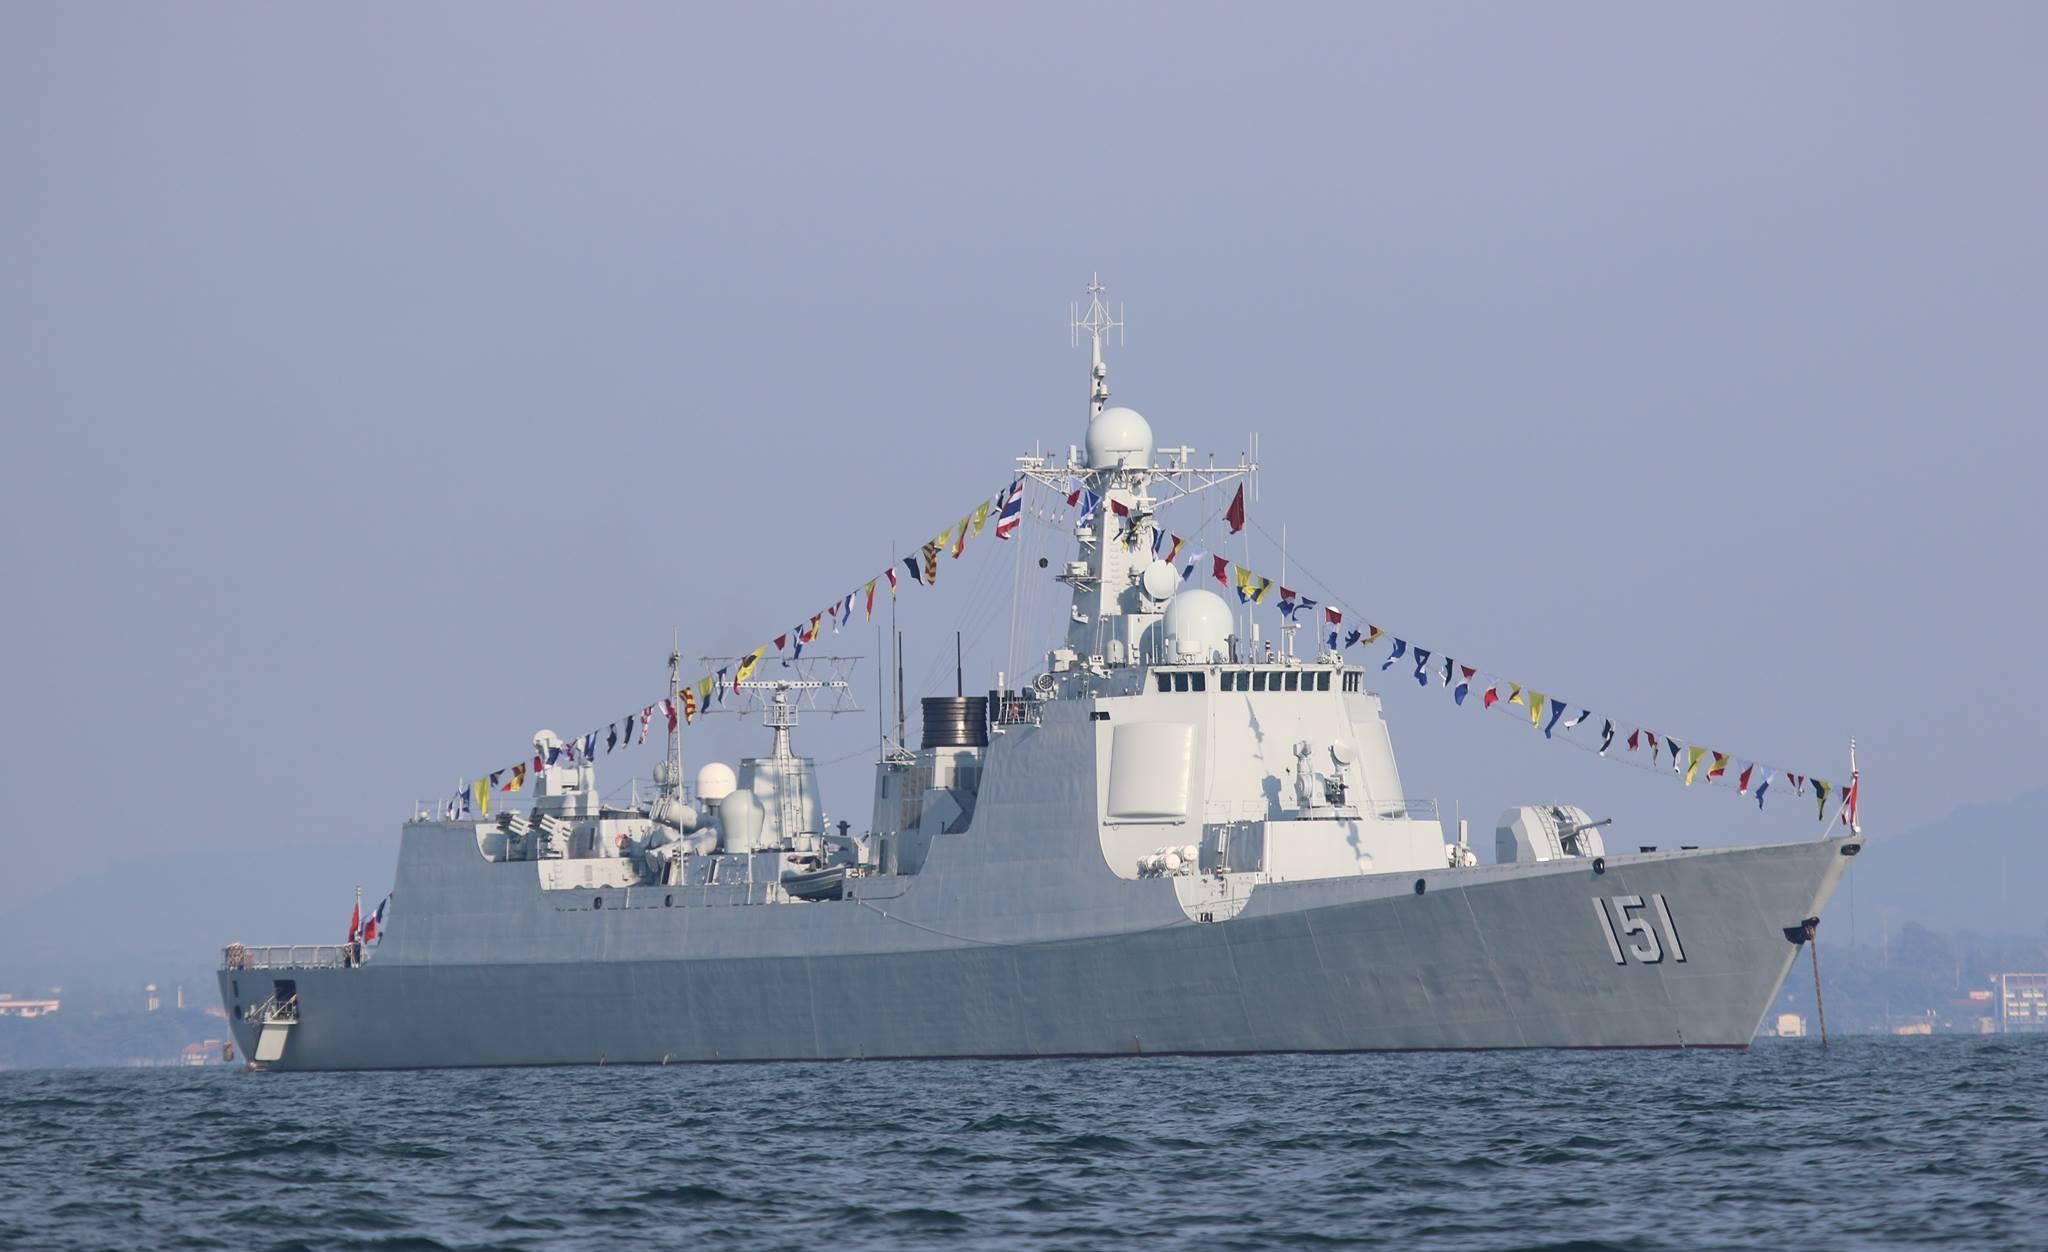 中国海军614舰图片